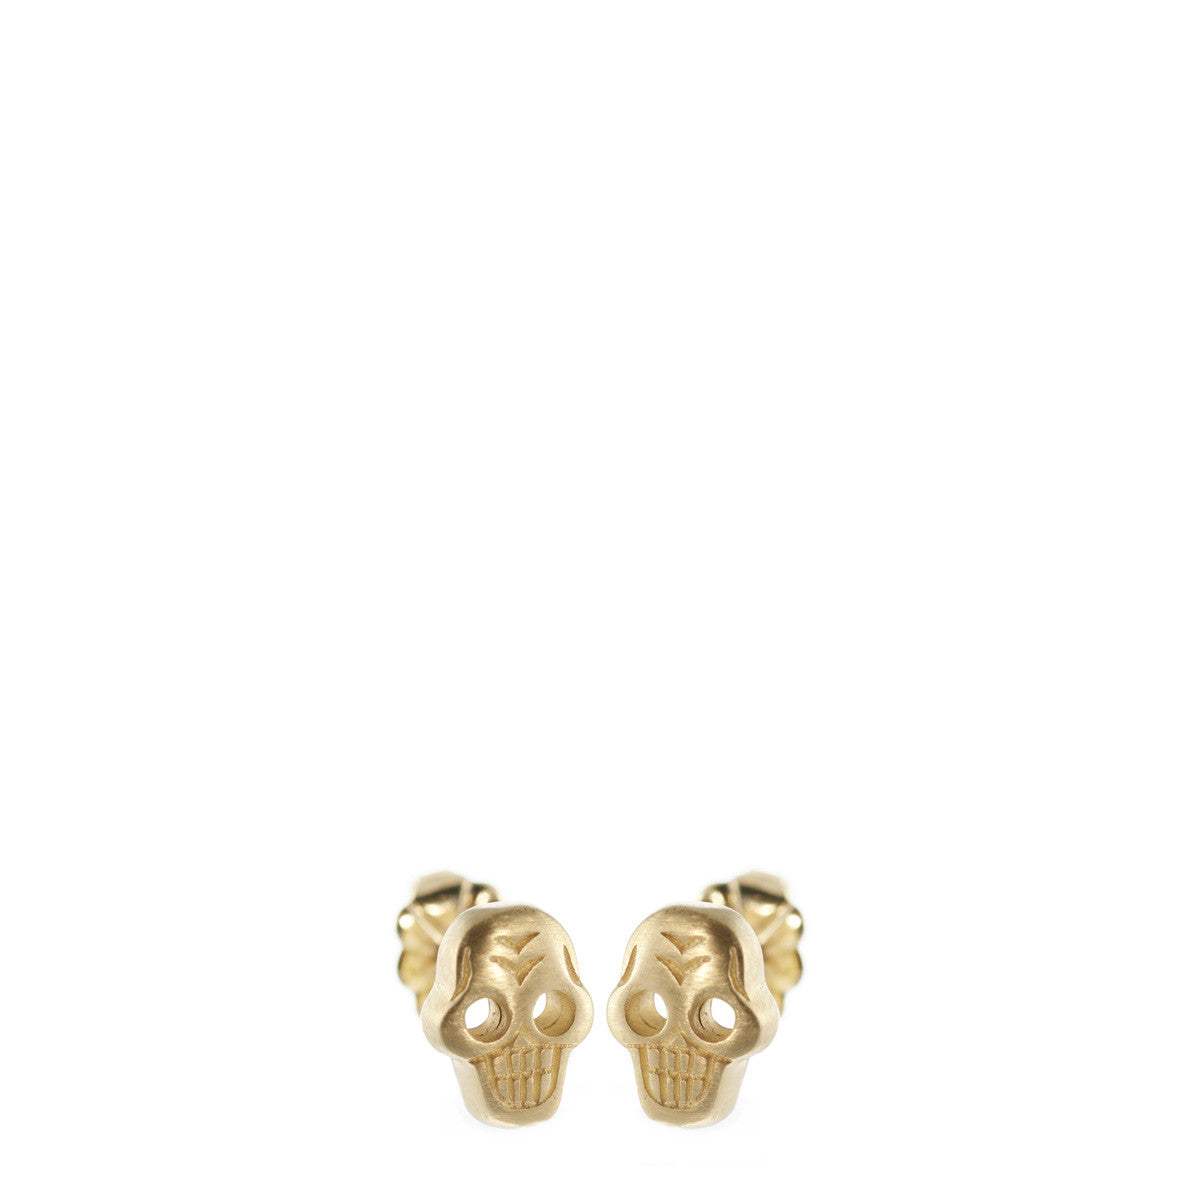 10K Gold Tiny Skull Stud Earrings